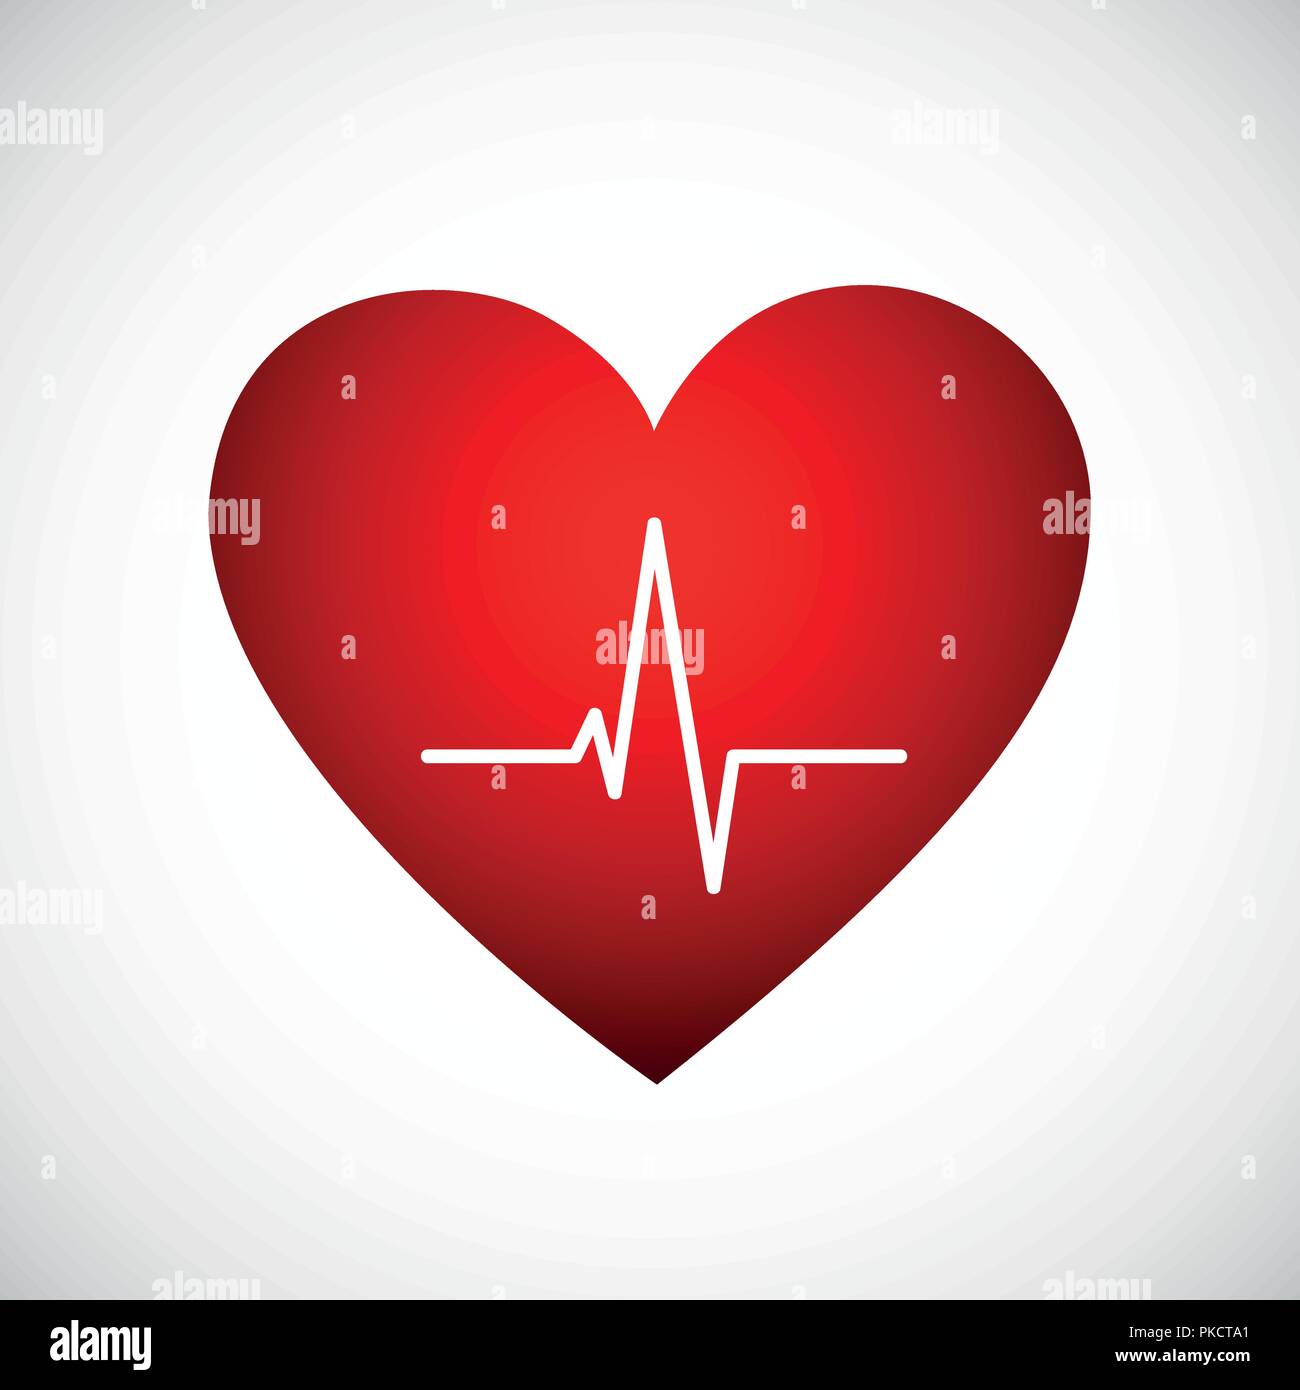 Medicina heartbeat linee piane cardiogram all'interno di un cuore rosso icona illustrazione vettoriale EPS10 Illustrazione Vettoriale